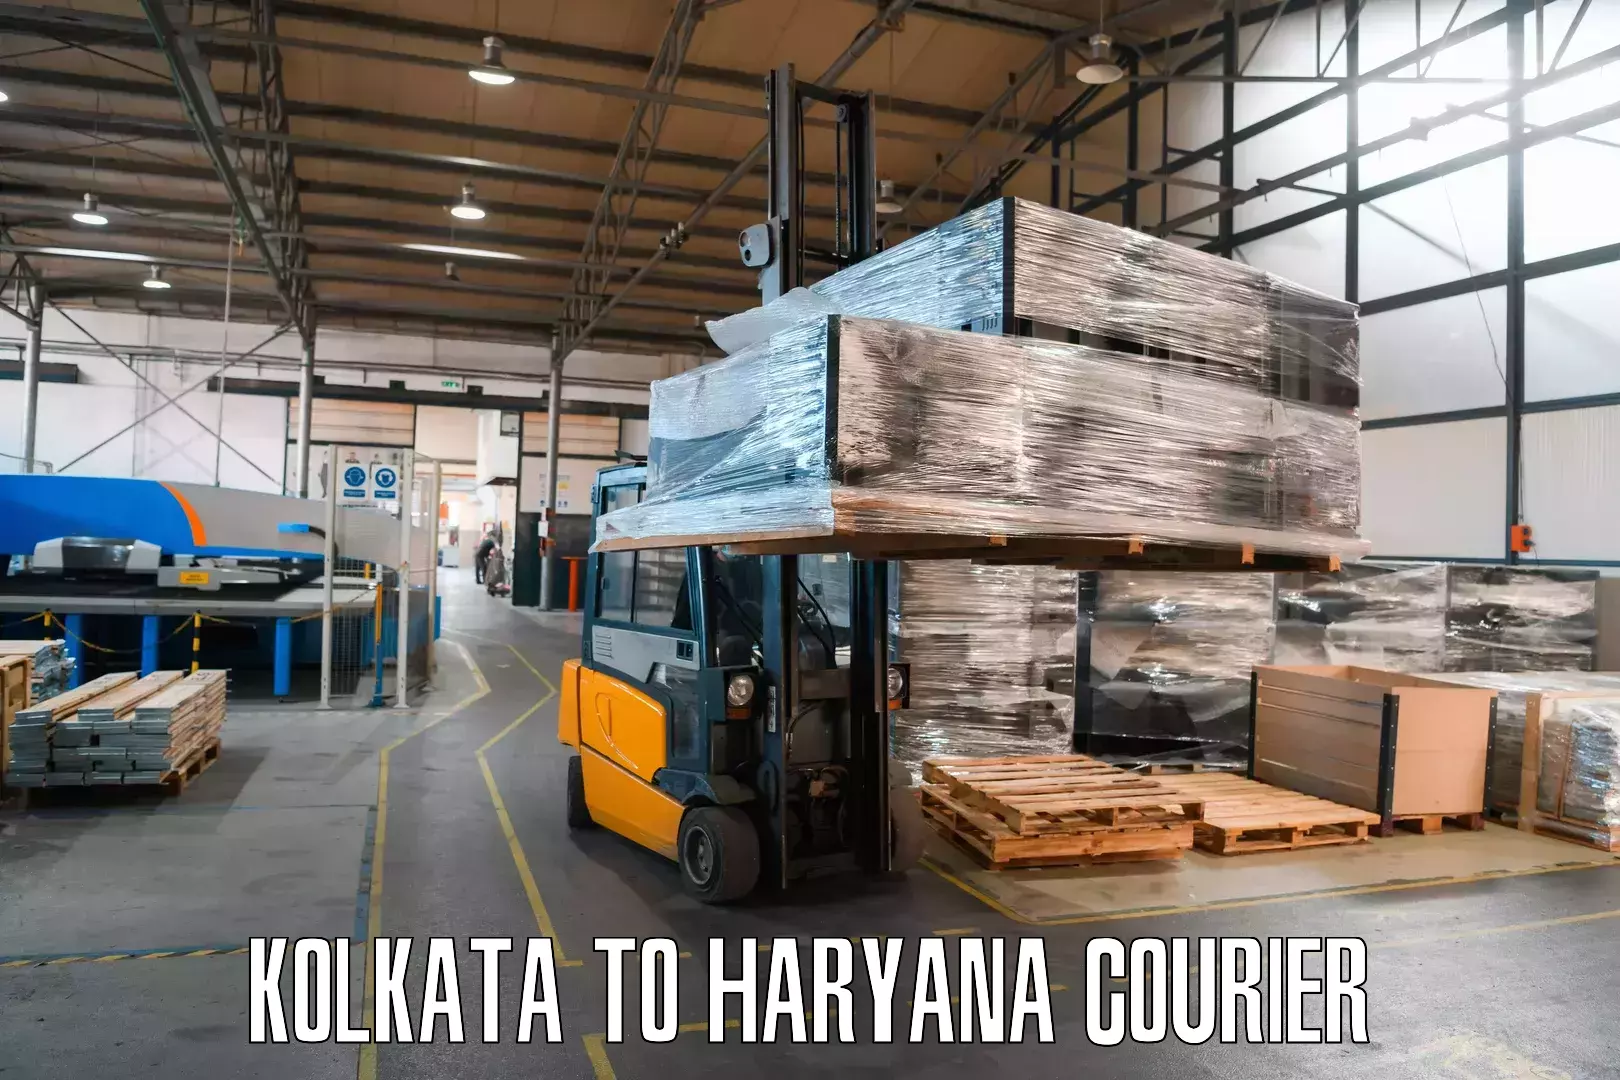 High-priority parcel service Kolkata to Guhla